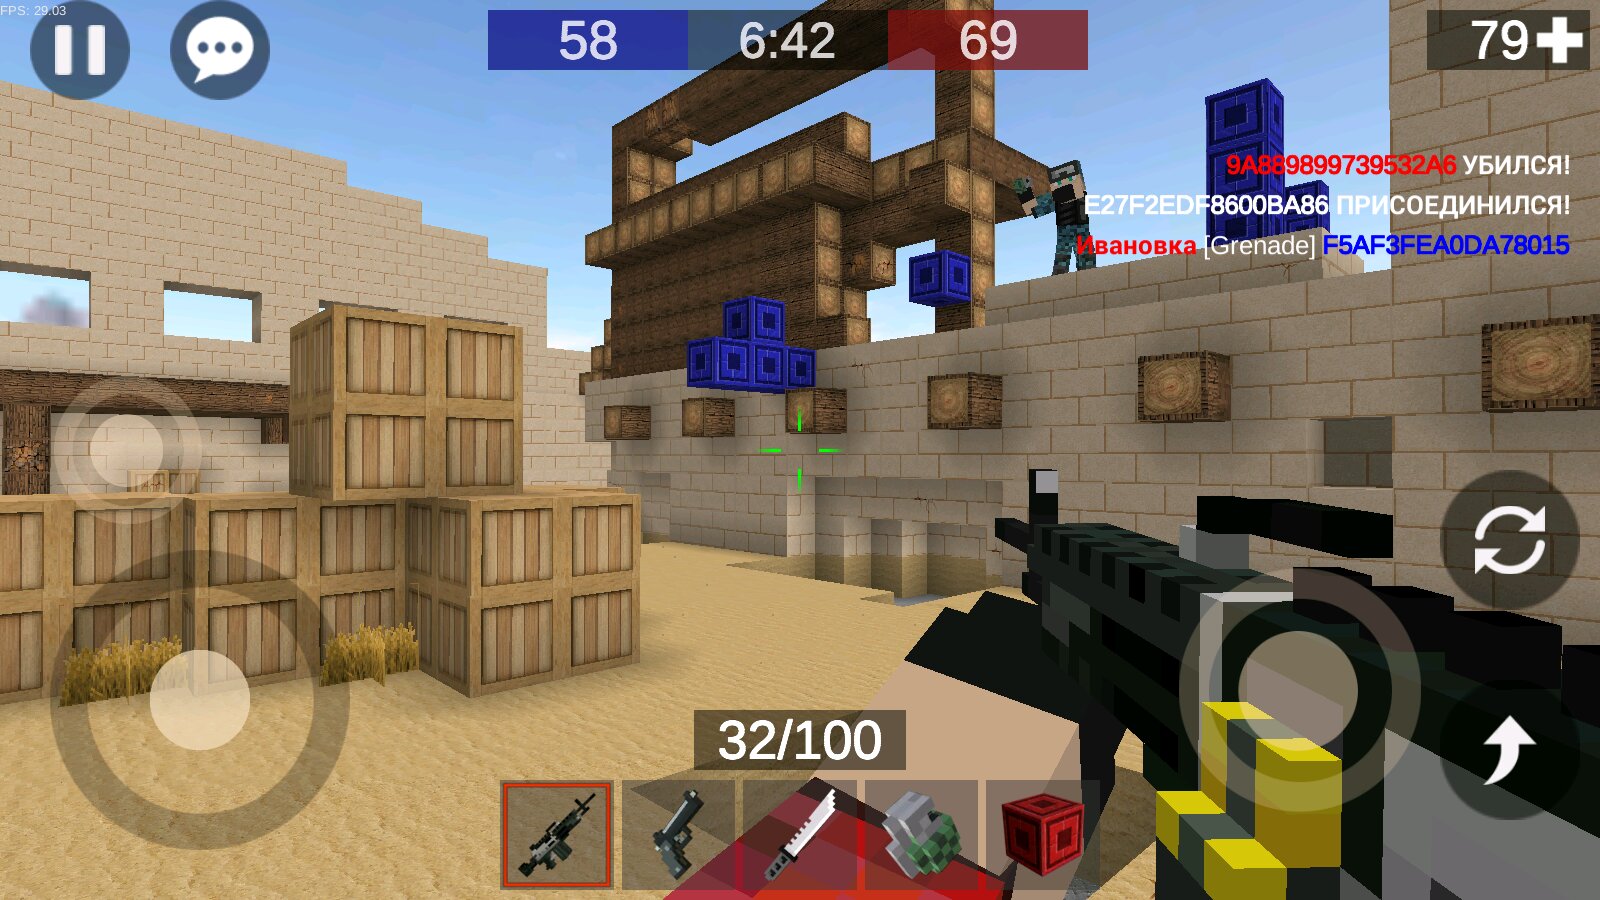 Игры стрелялки пиксельные. Игра Pixel Combats 2. Pixel Combat игра. Pixel Combats 2 андроид. Пиксельные игры стрелялки.